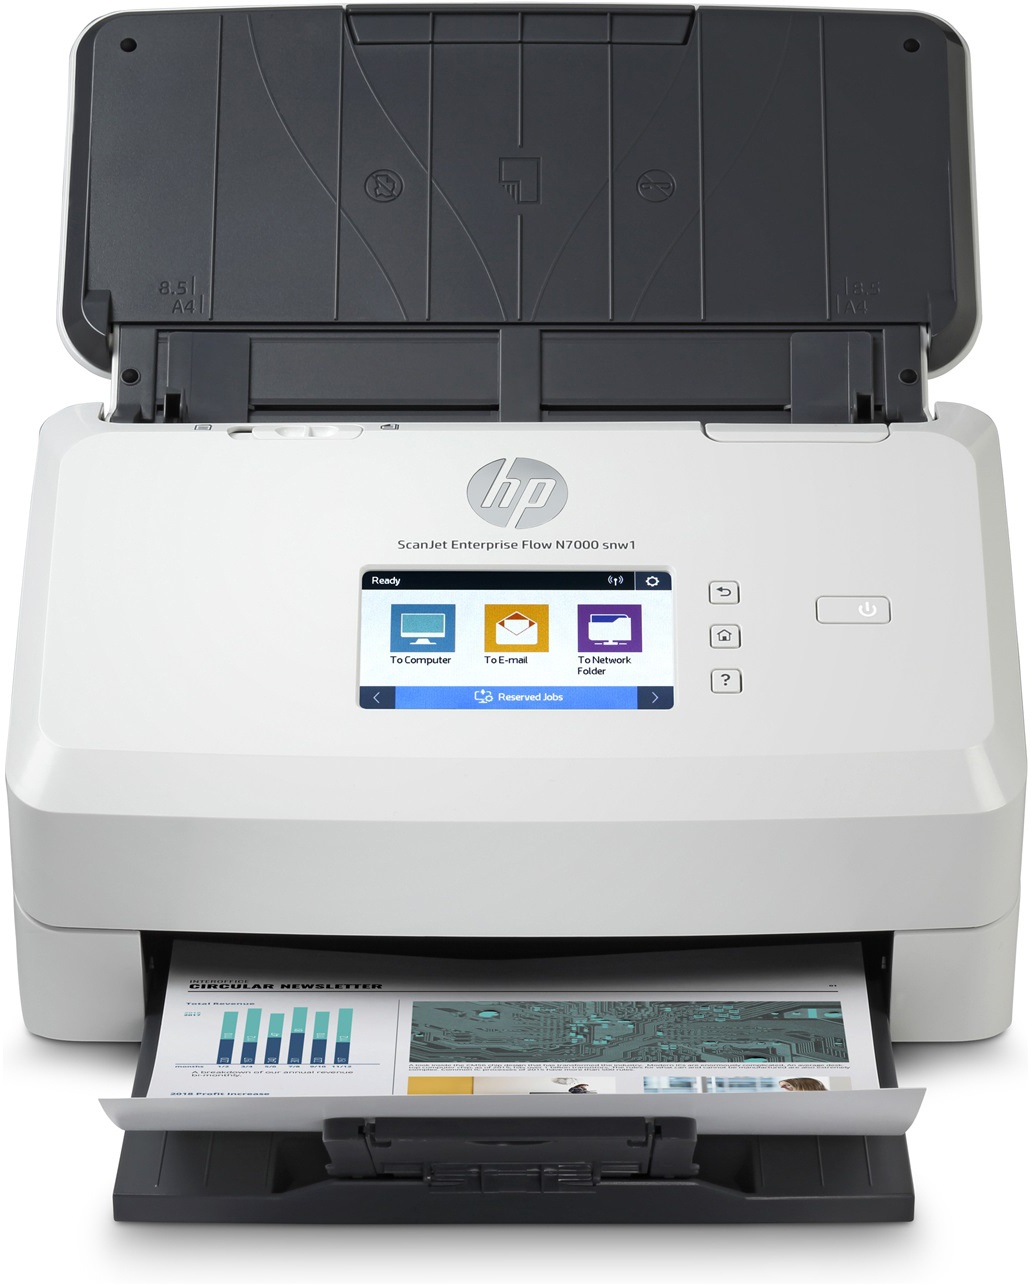 HP ScanJet Enterprise Flow N7000 snw1 Dokumentenscanner WLAN LAN Autom. 80-Blatt-Dokumenteneinzug | Beidseitiges Scannen | Bis zu 75 Seiten/Min. | USB